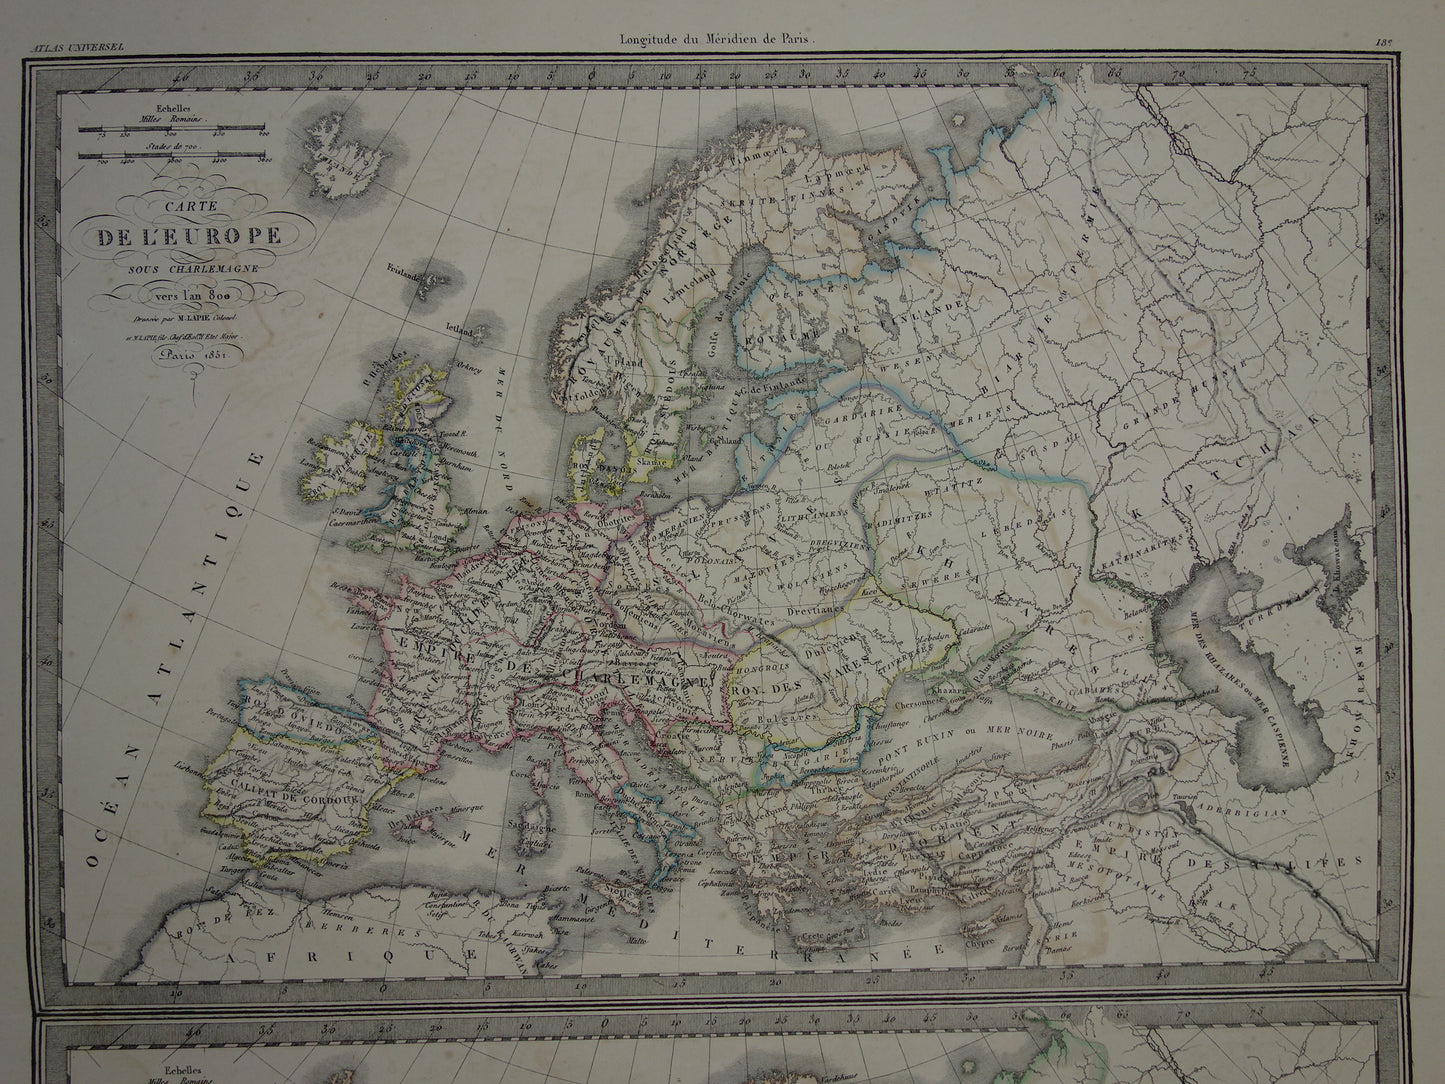 Europa ten tijde van Karel de Grote landkaart 